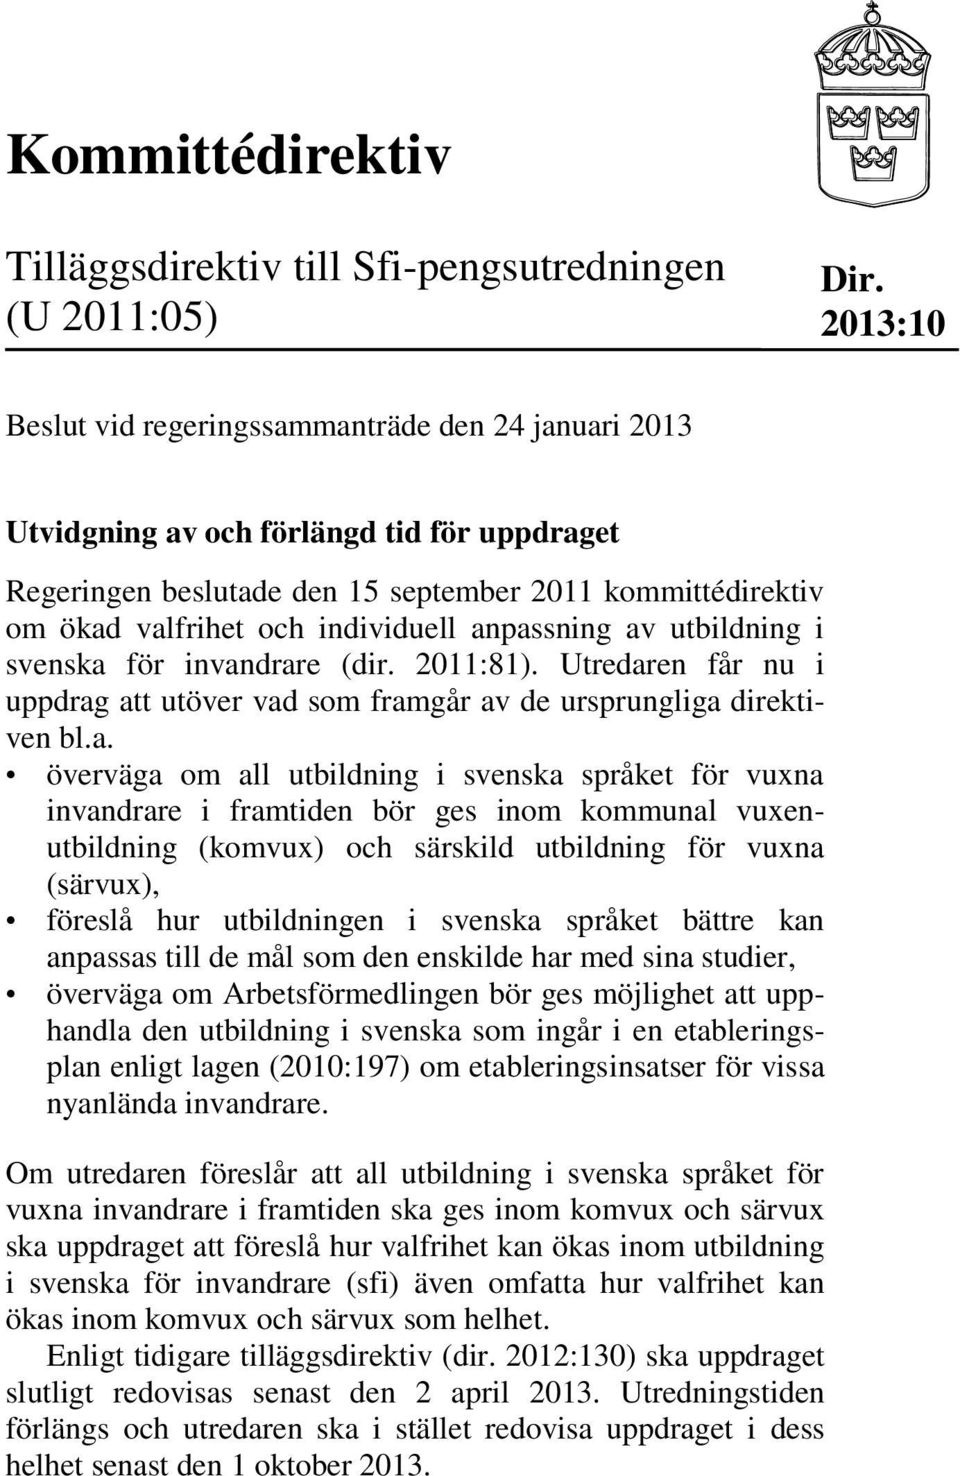 anpassning av utbildning i svenska för invandrare (dir. 2011:81). Utredaren får nu i uppdrag att utöver vad som framgår av de ursprungliga direktiven bl.a. överväga om all utbildning i svenska